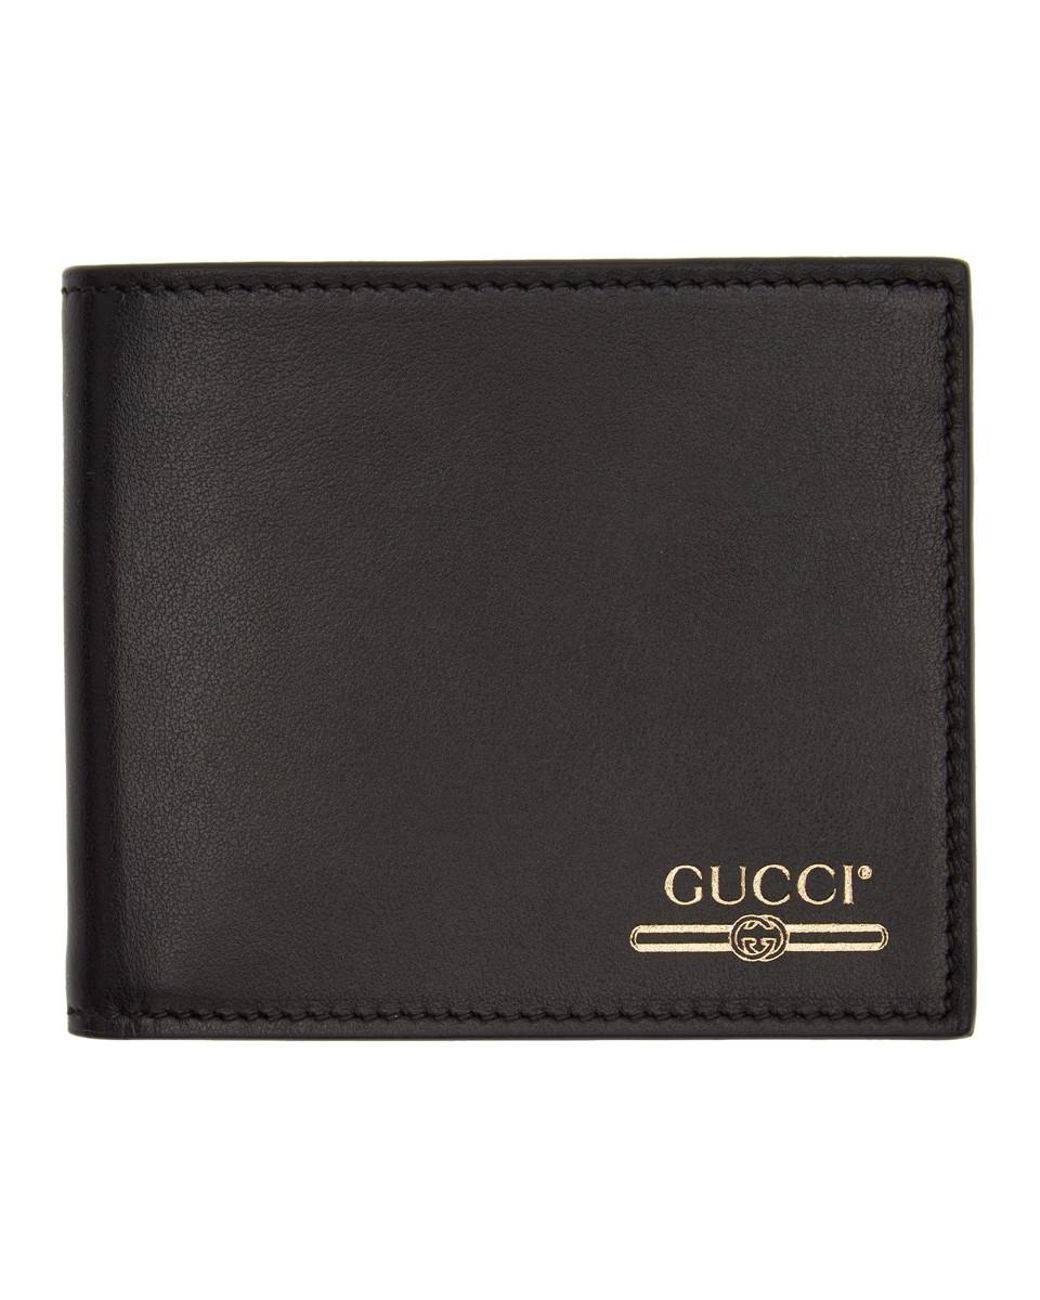 ssense gucci wallet